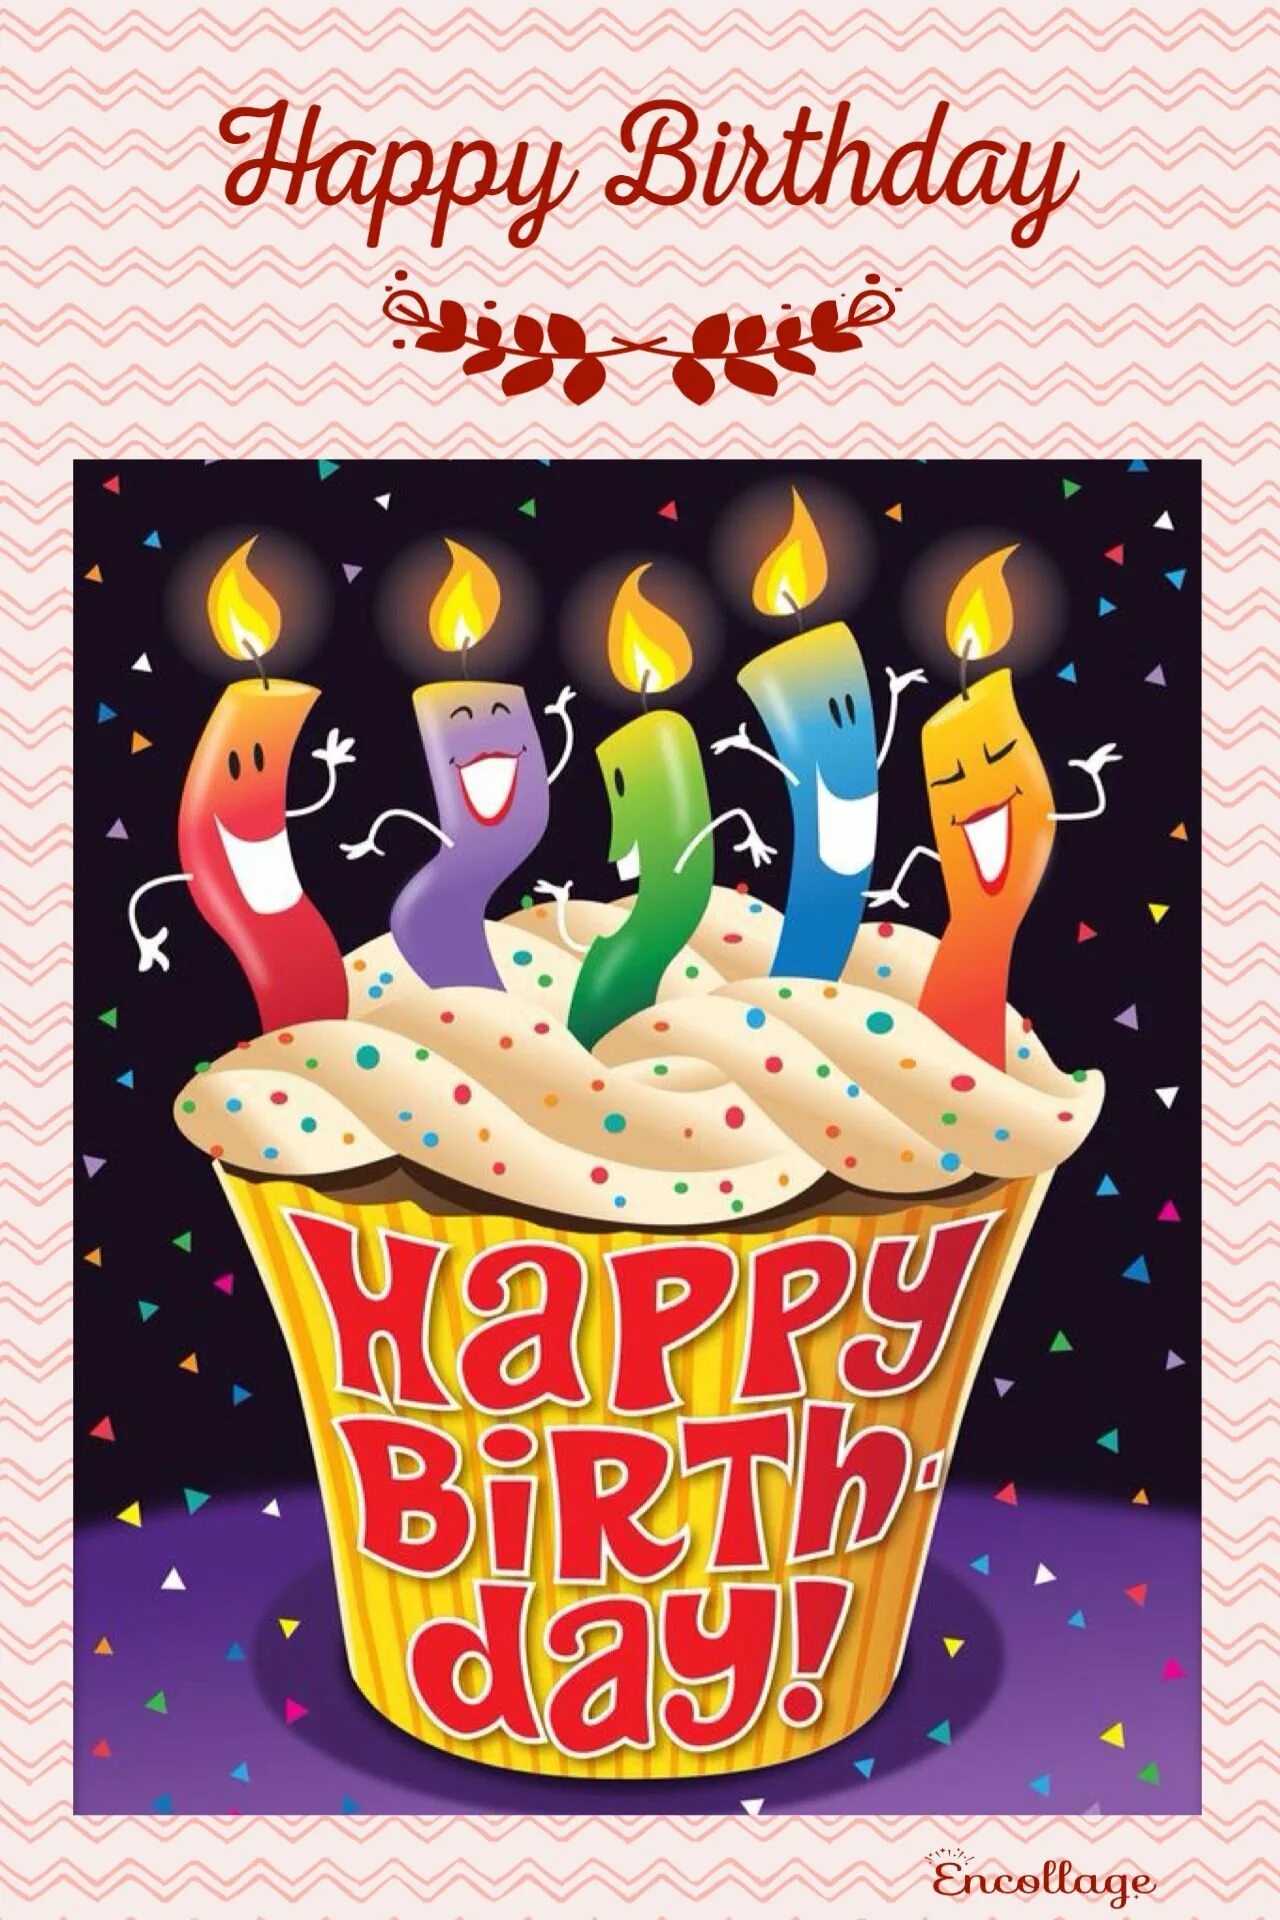 С днём рождения оригинальные. Креативные открытки с днем рождения. С днем рождения оригинально. С днем рождения необычные картинки.